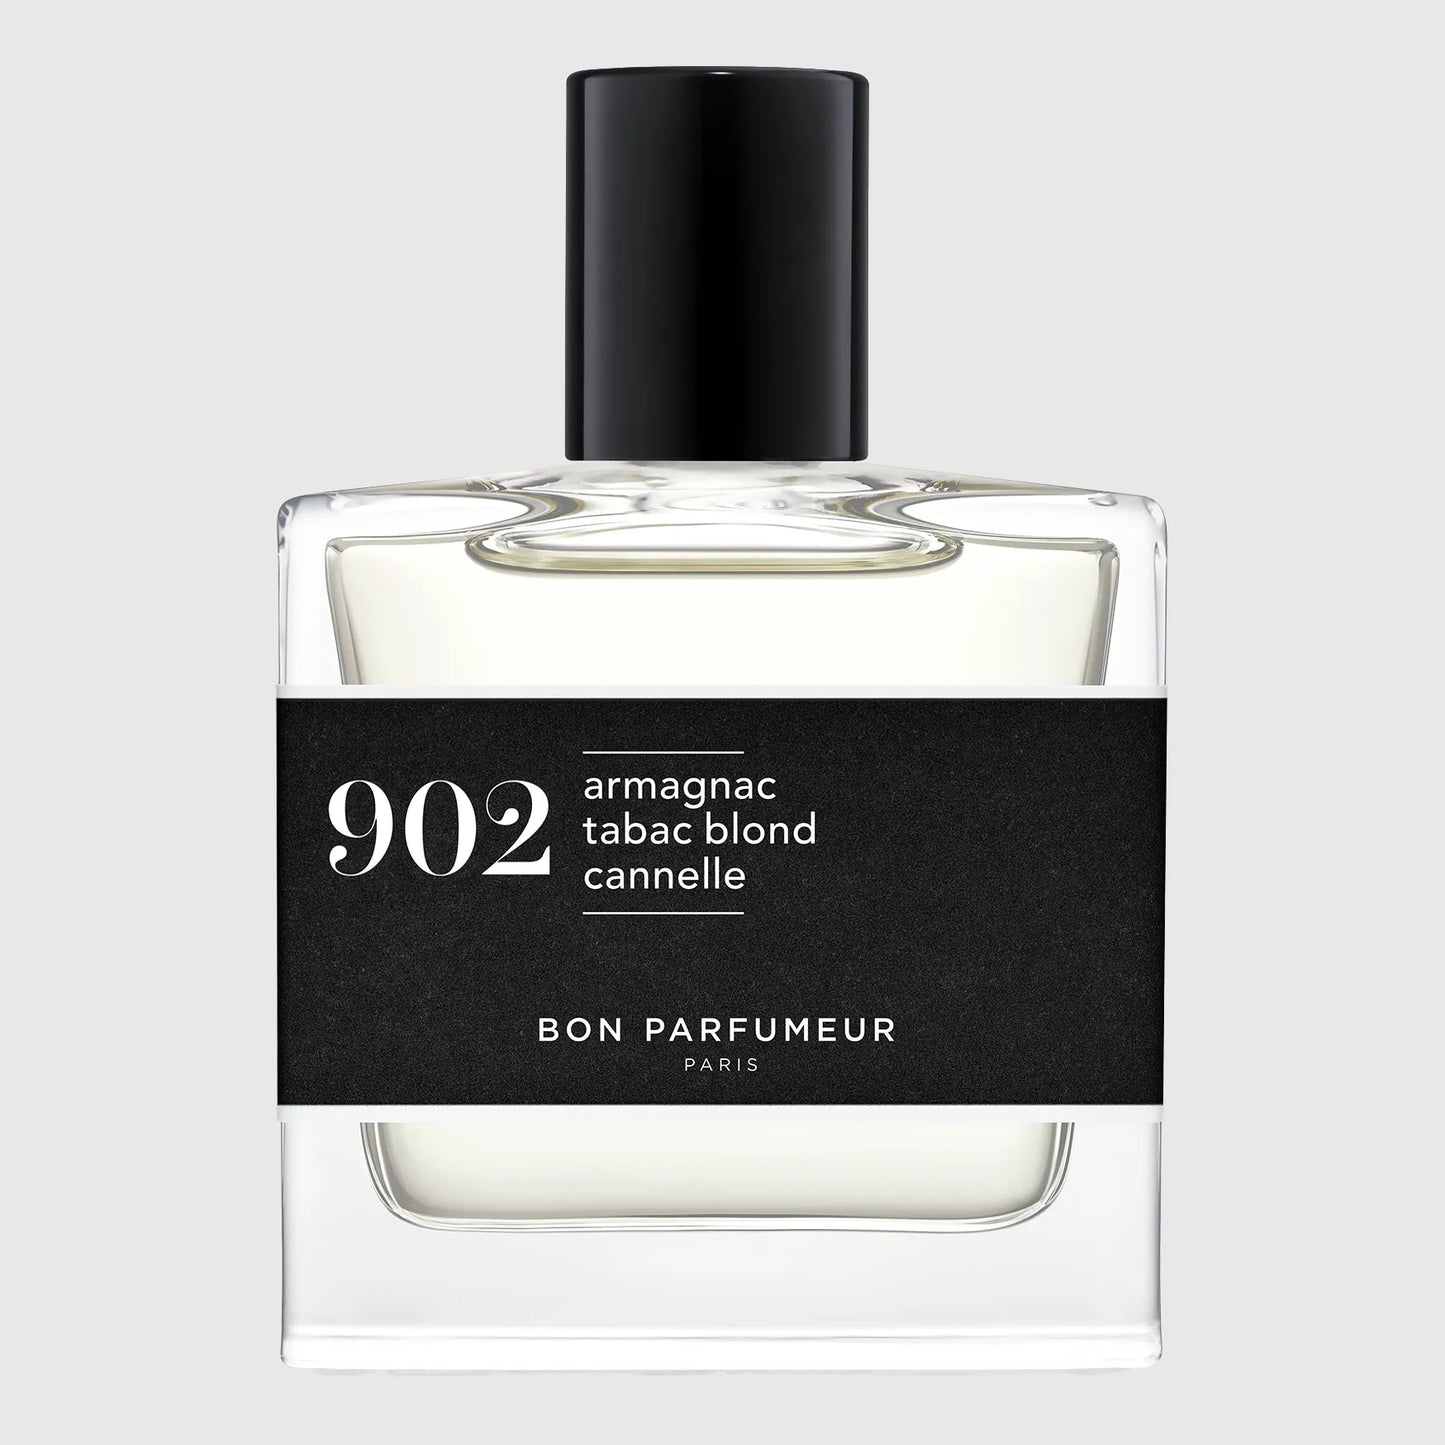 Bon Parfumeur Eau de Parfum 902 Fragrance Bon Parfumeur 